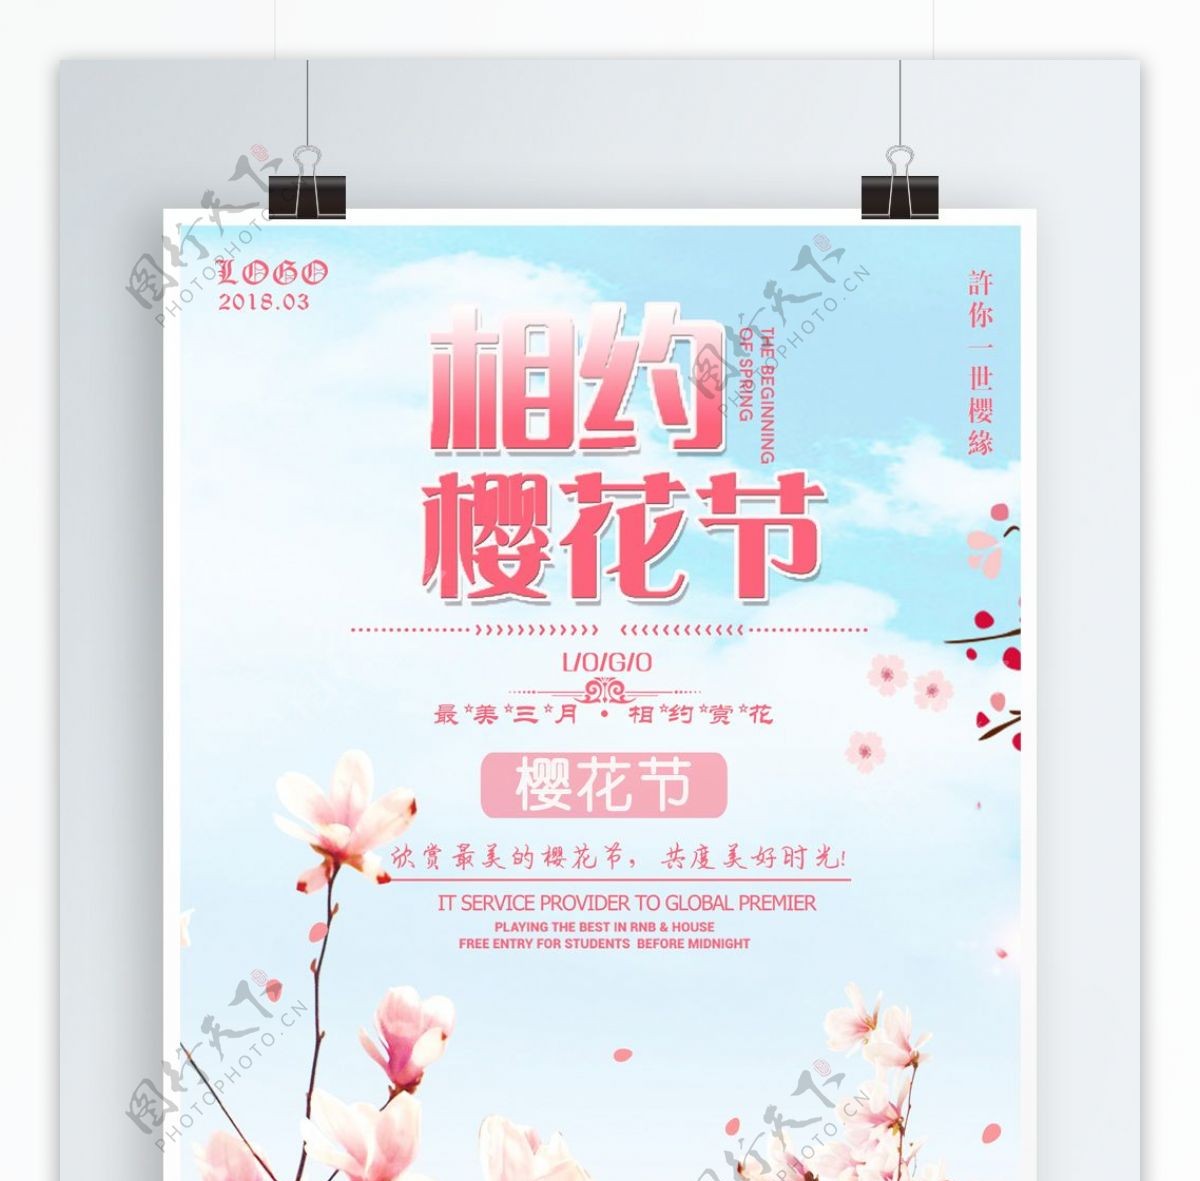 简约风樱花节宣传海报